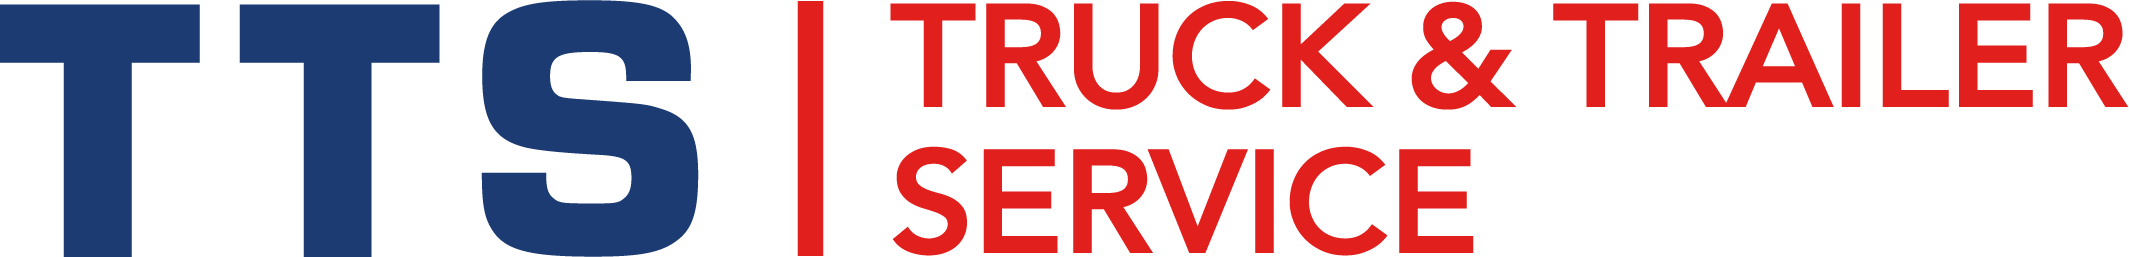 Truck & Trailer service Swifterbant